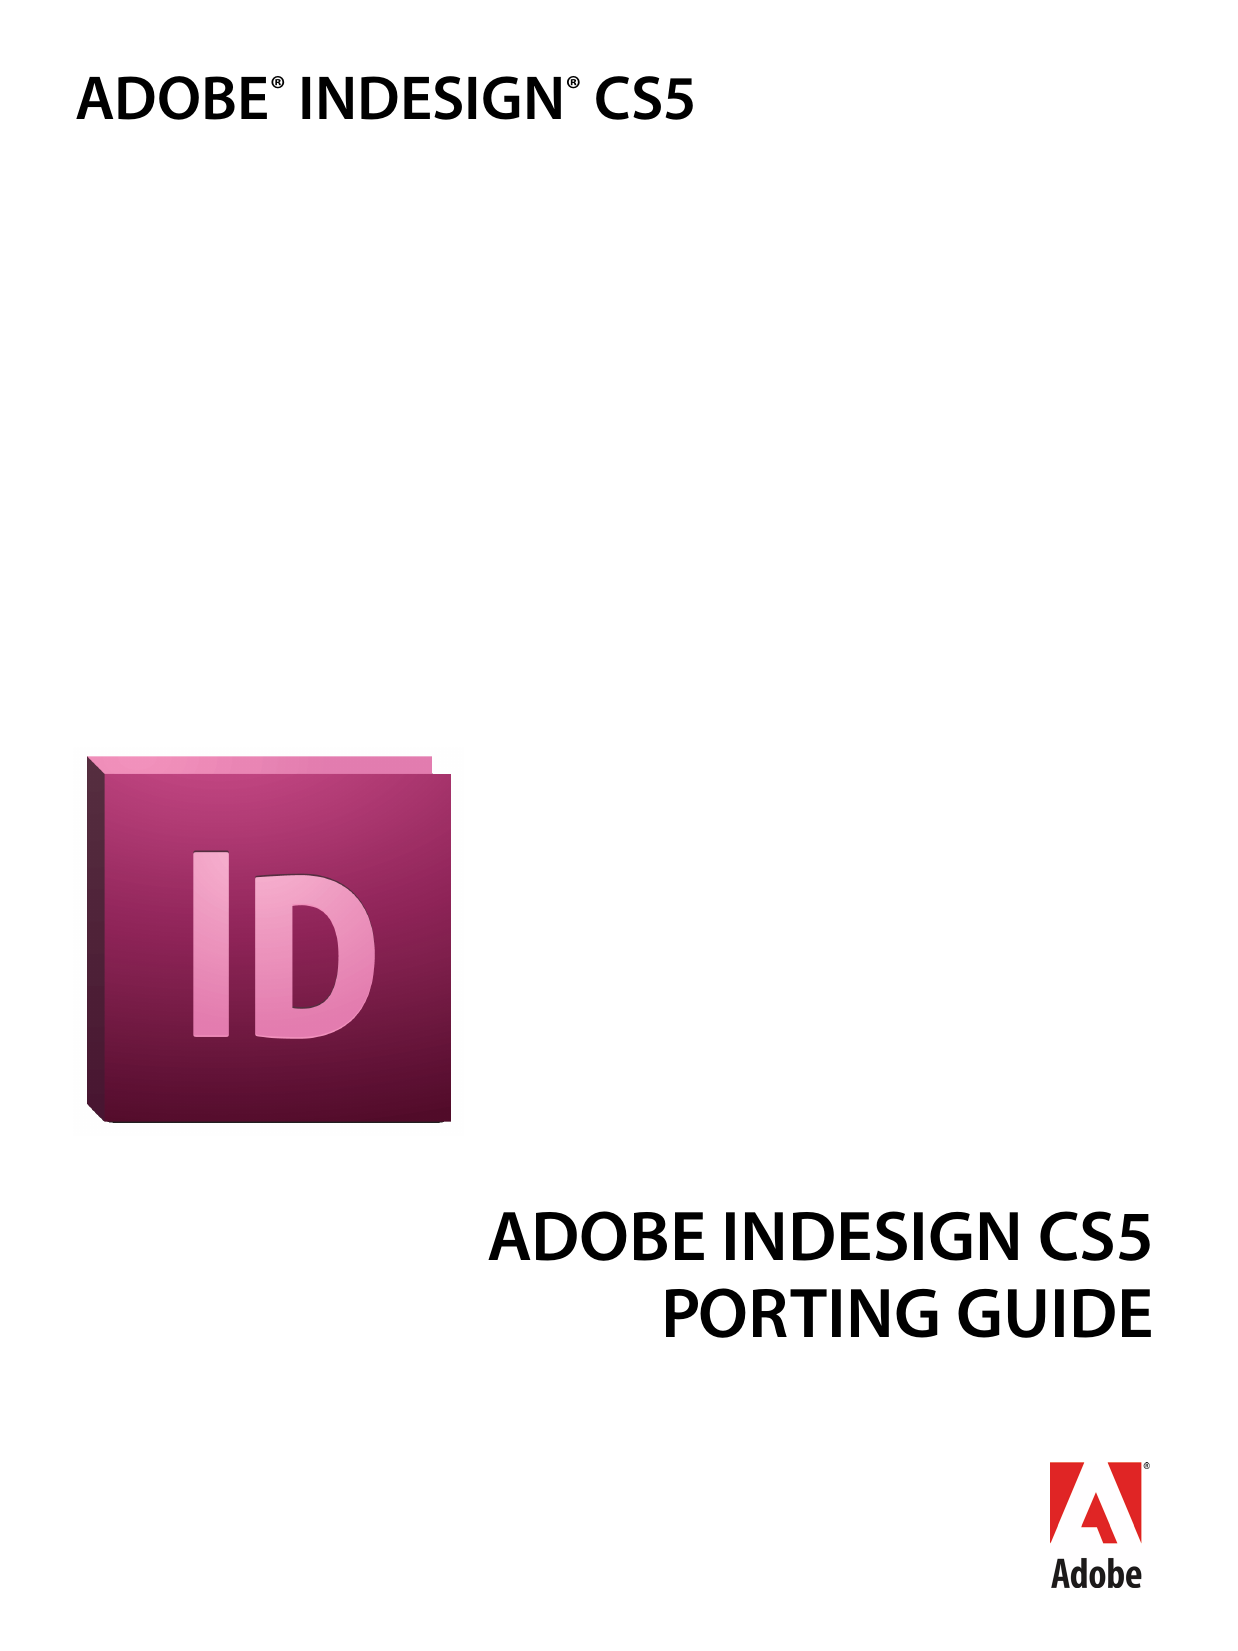 tutorials for adobe indesign cs5